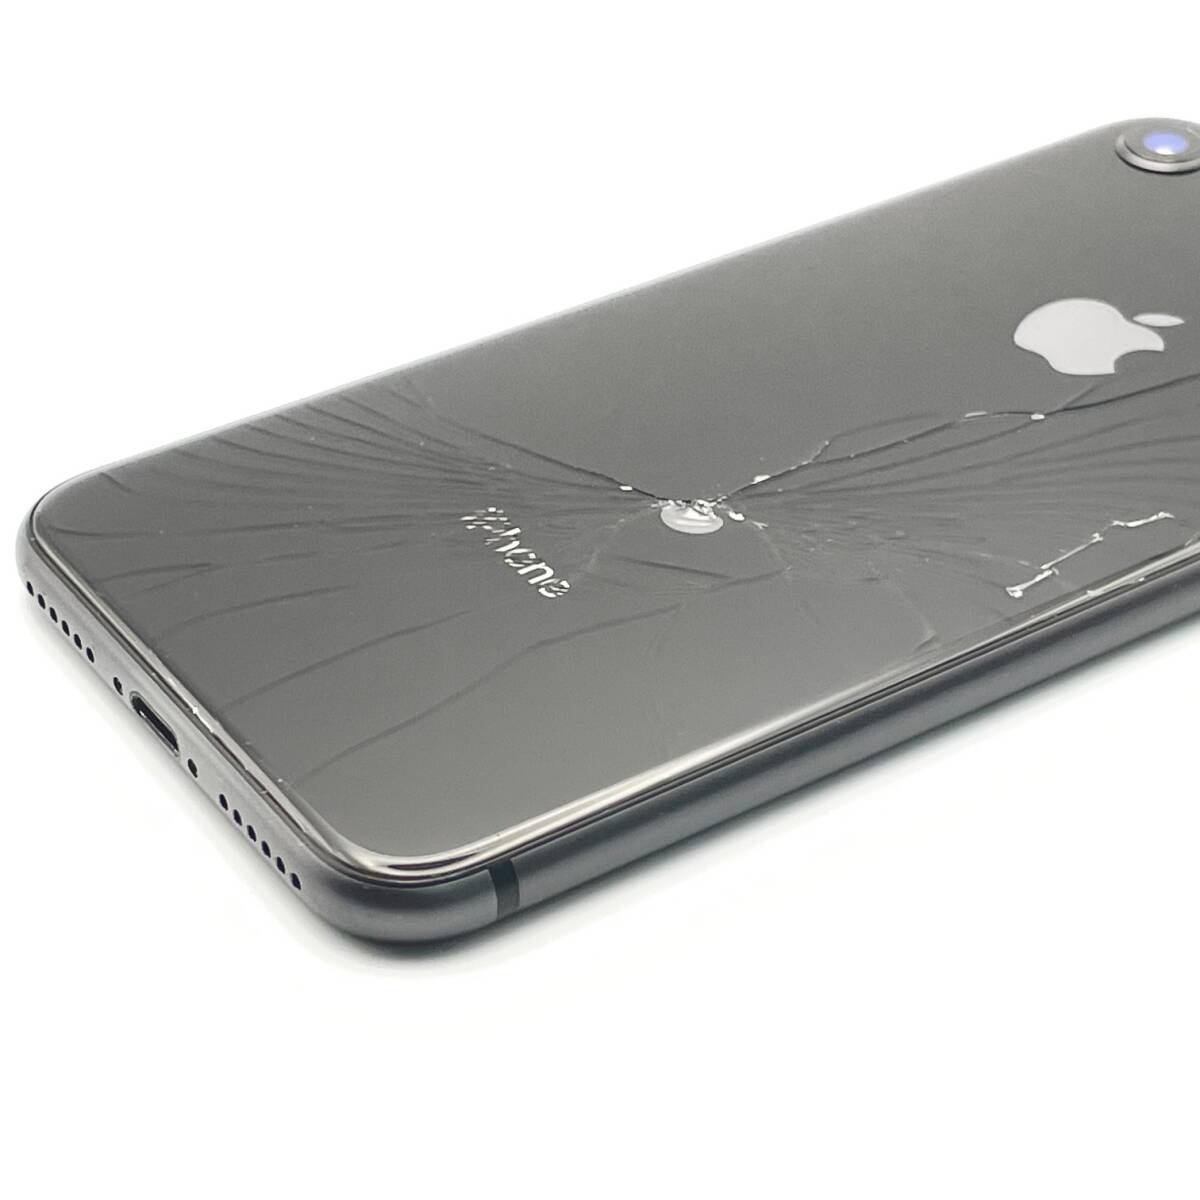 中古 ジャンク品 Apple アップル iPhone 8 64GB スペースグレイ